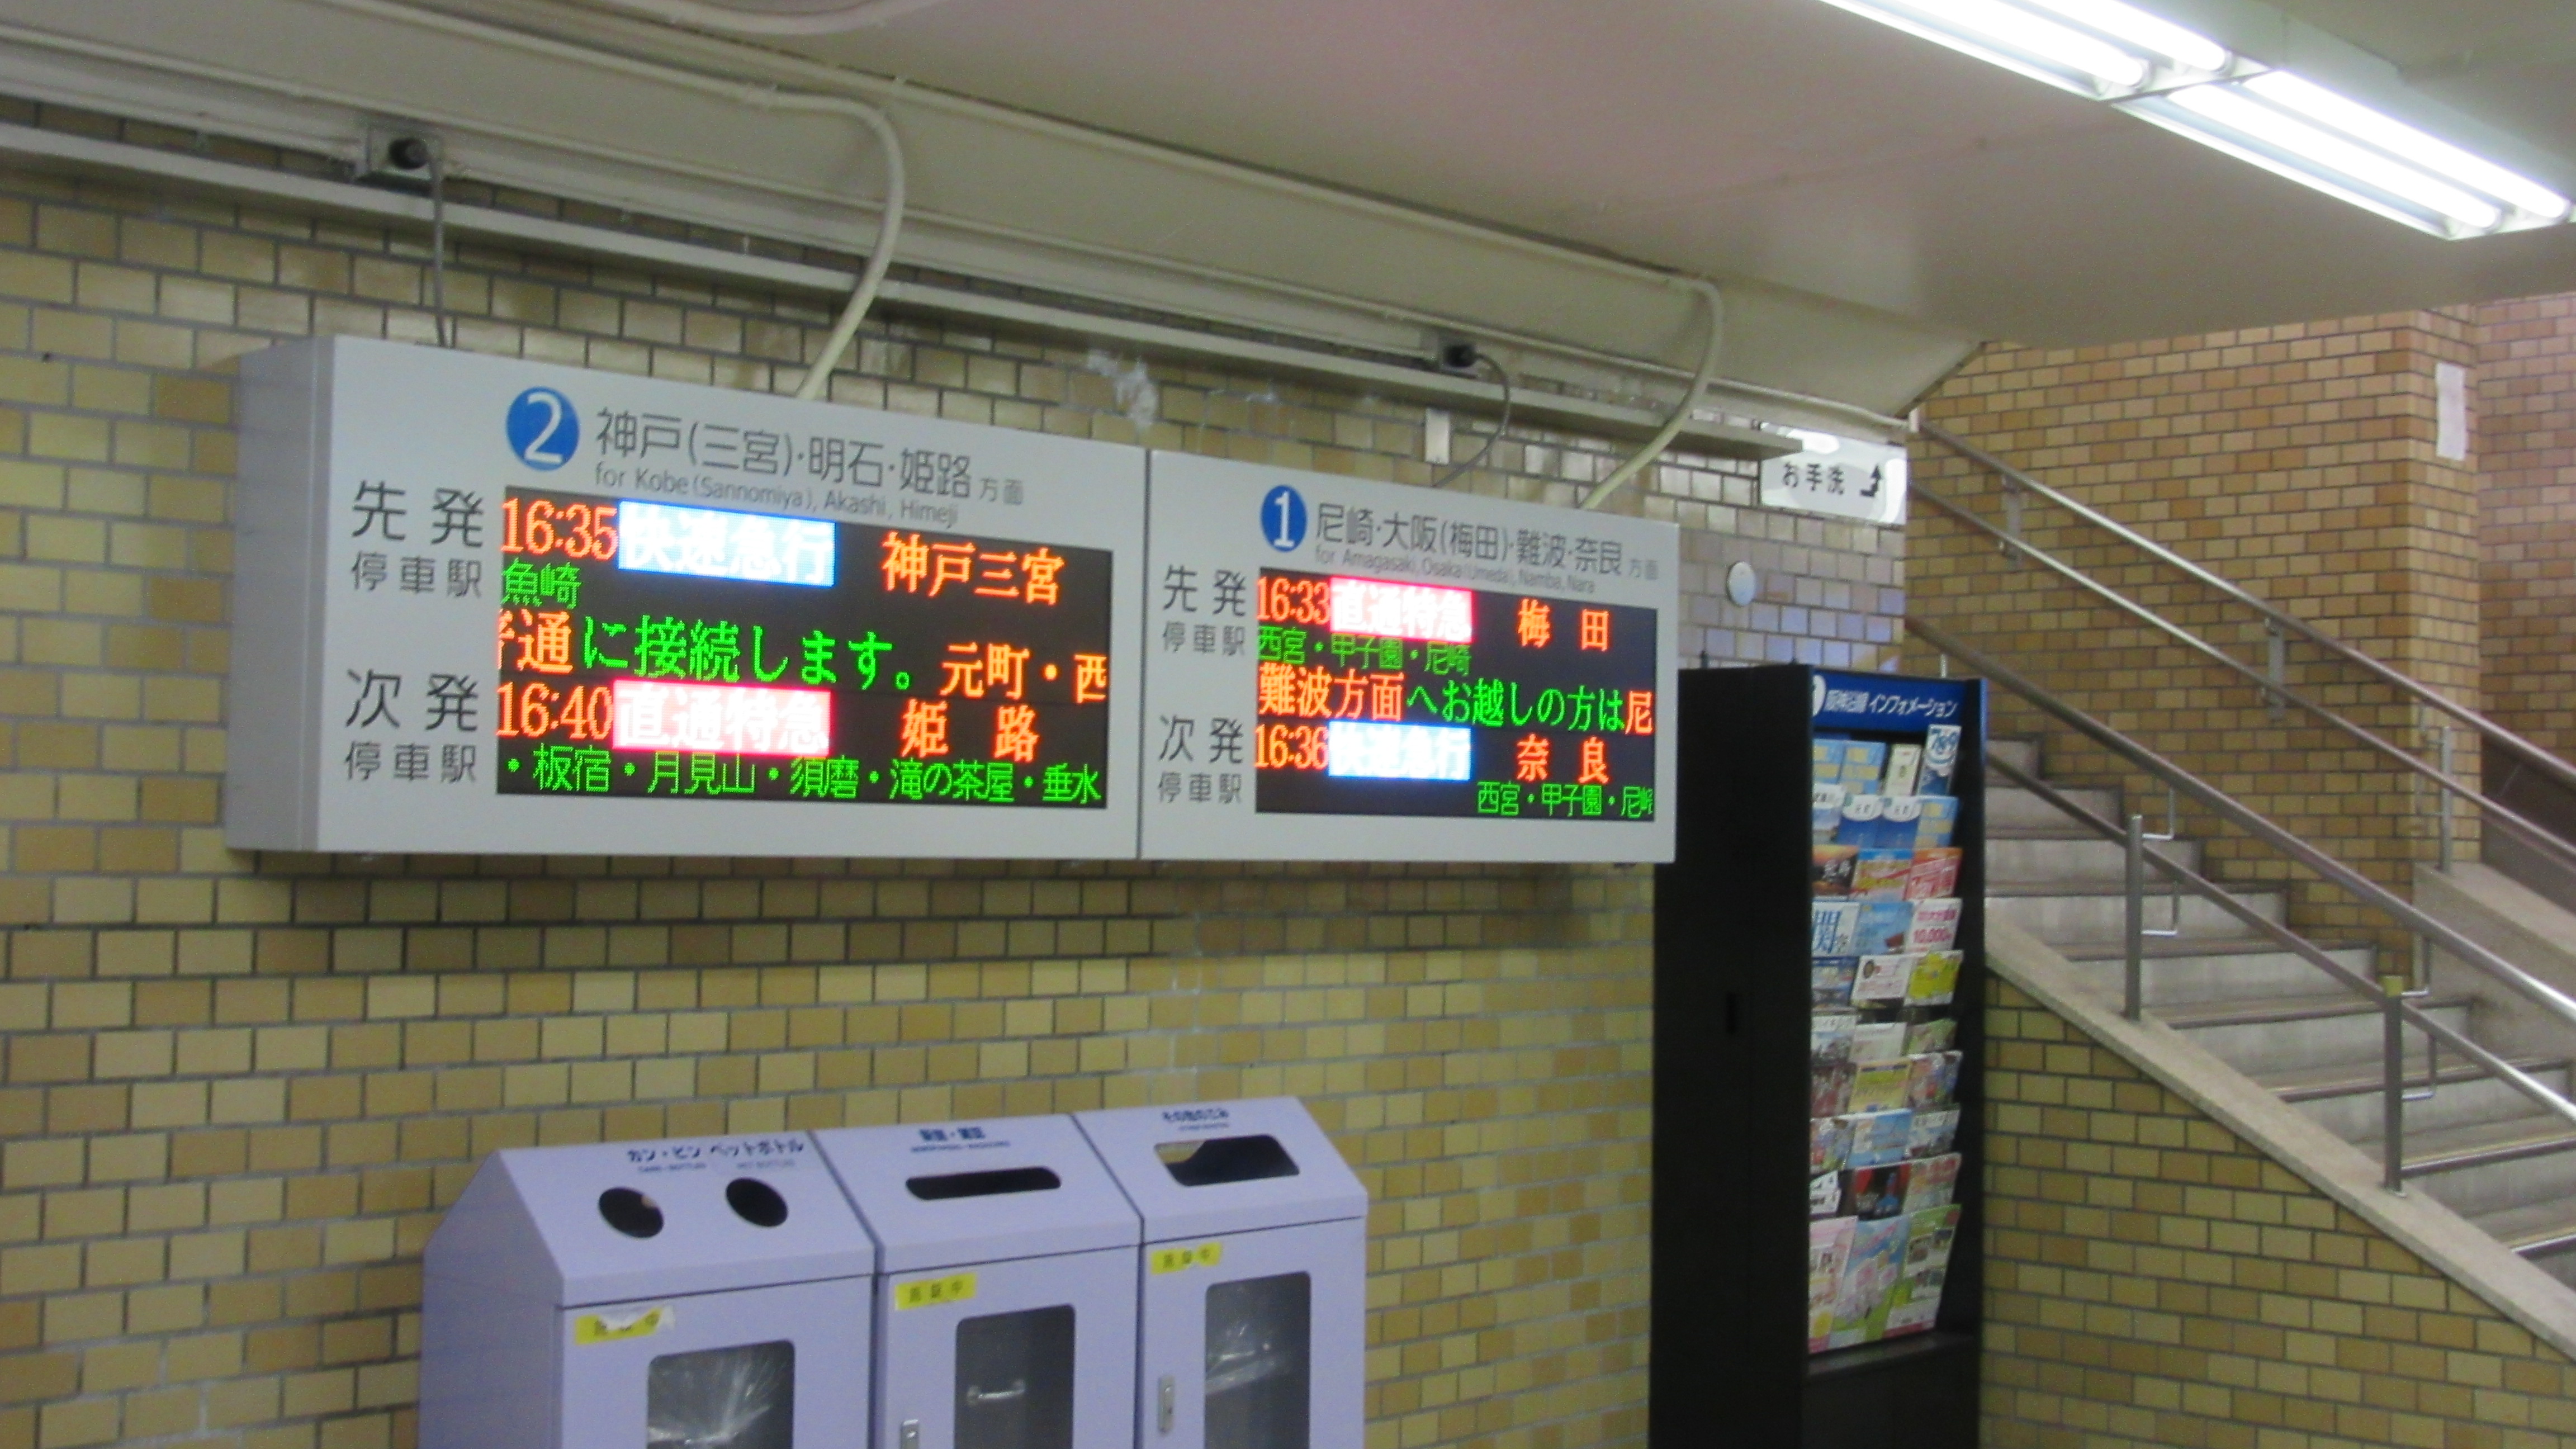 コンコース案内表示器 阪神電車 発車標